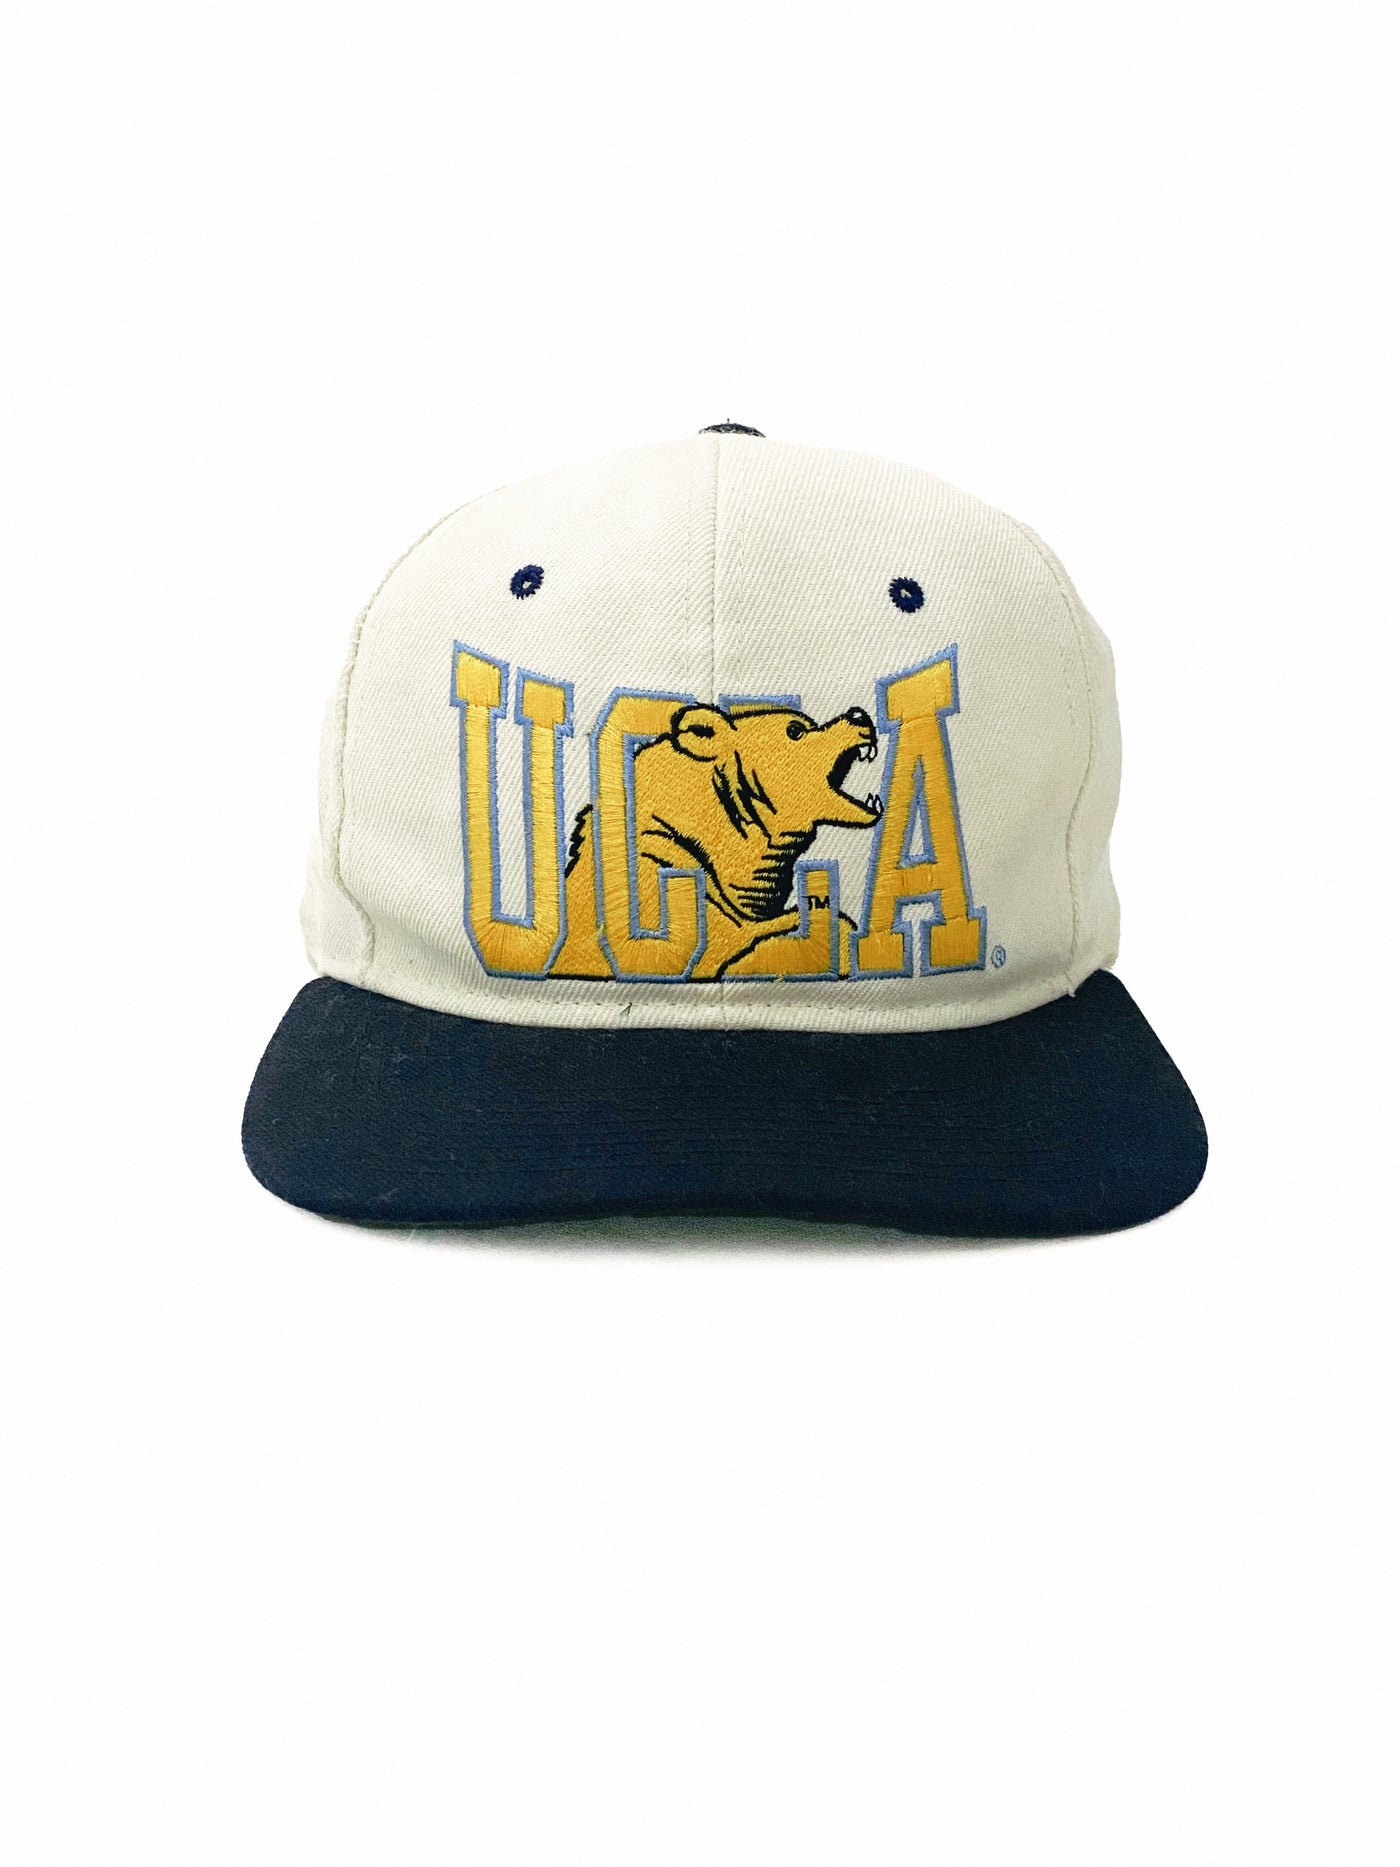 Vintage 90s UCLA Bruins Snapback